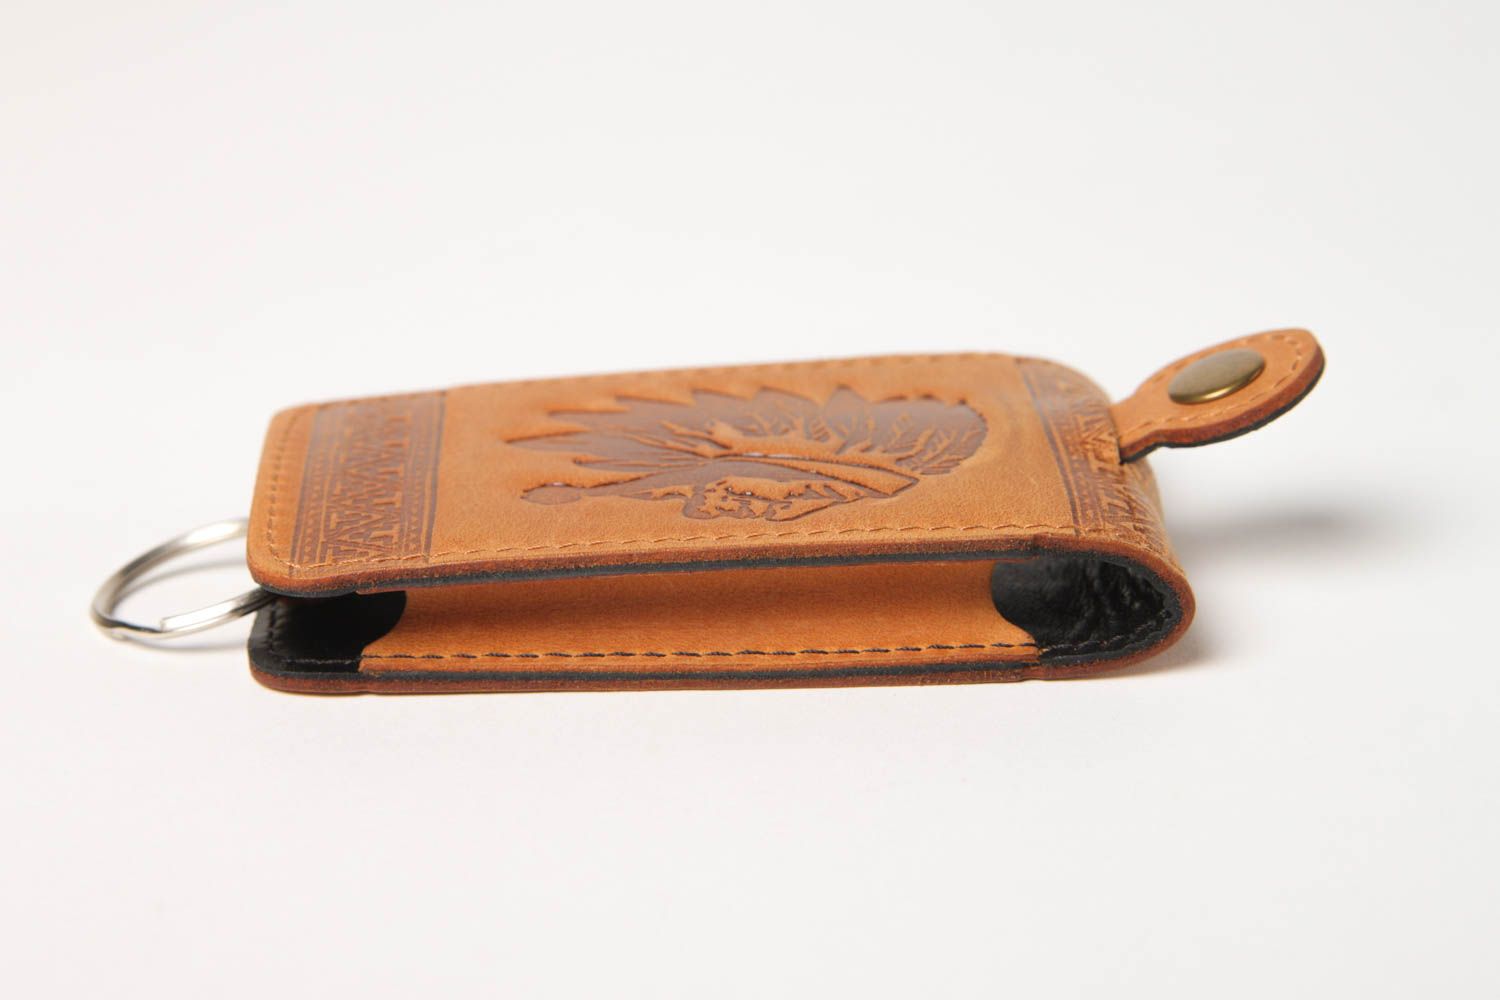 Stylish handmade leather key case unusual key holder design best gift ideas photo 4